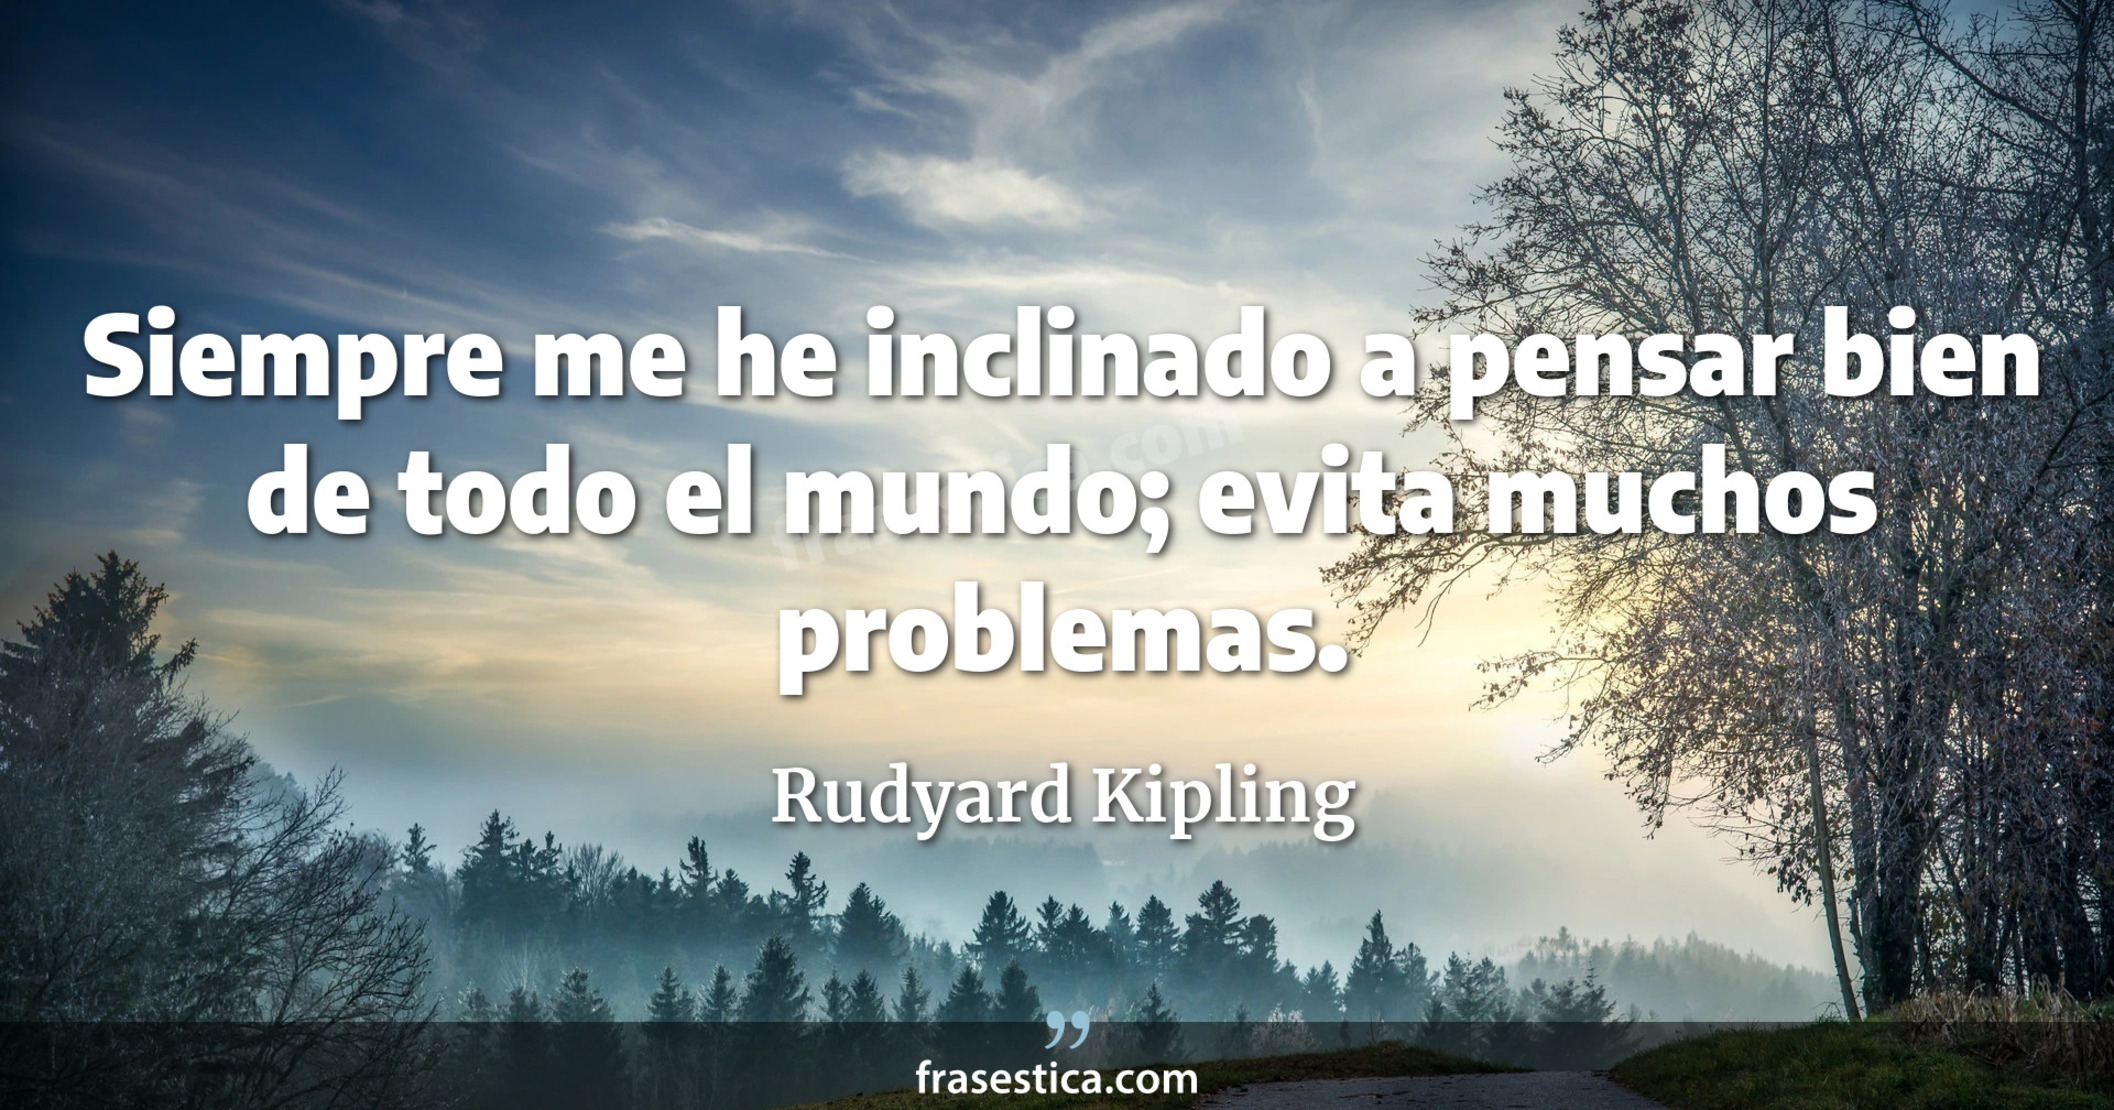 Siempre me he inclinado a pensar bien de todo el mundo; evita muchos problemas. - Rudyard Kipling